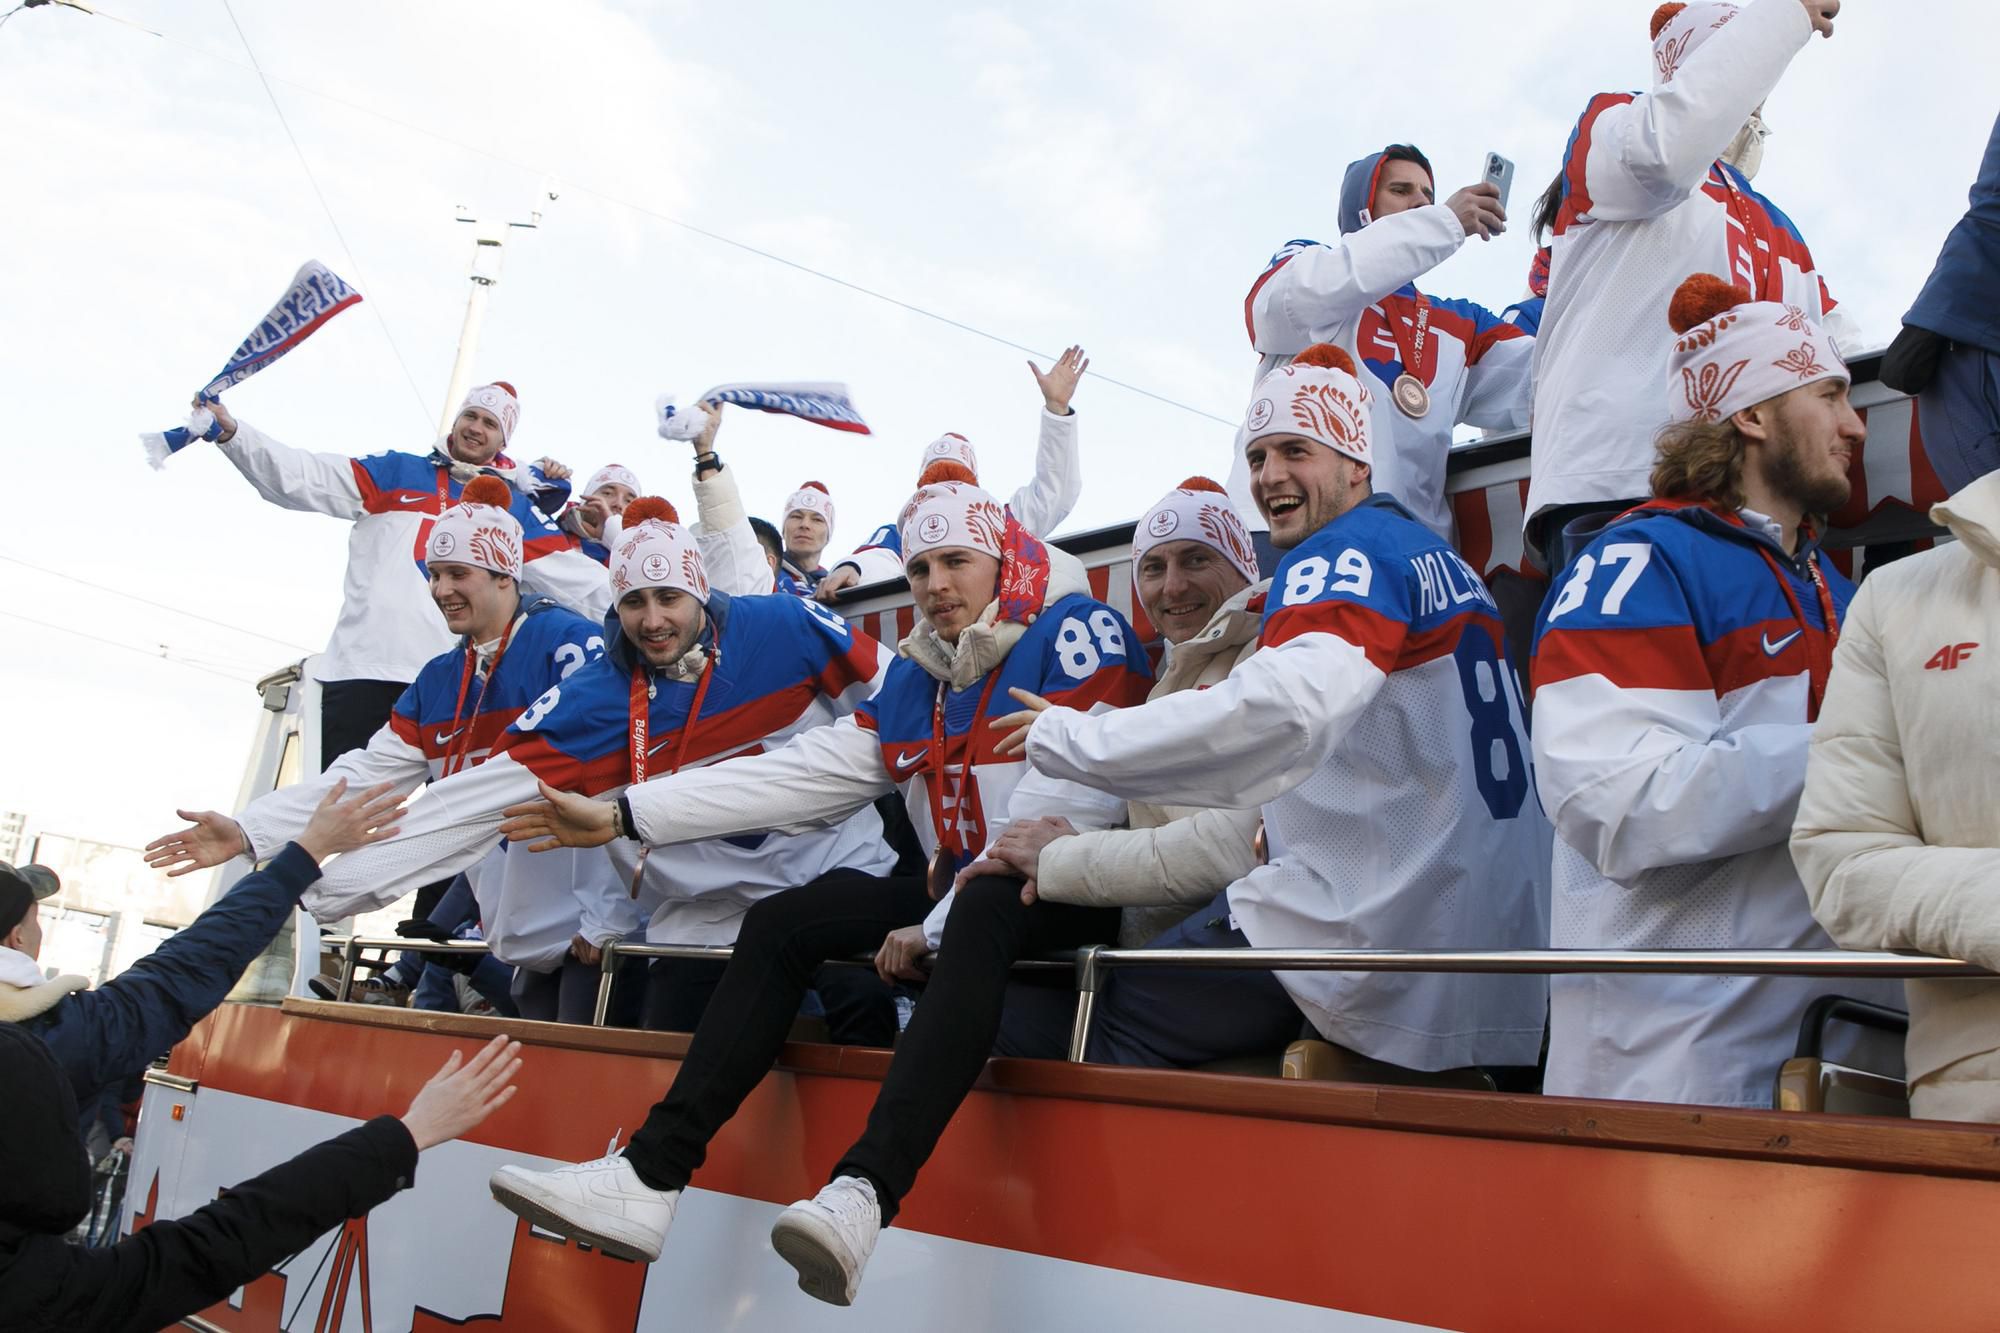 Fanúšikovia zdravia hokejistov počas ich okružnej jazdy kabrioautobusom v uliciach Bratislavy.